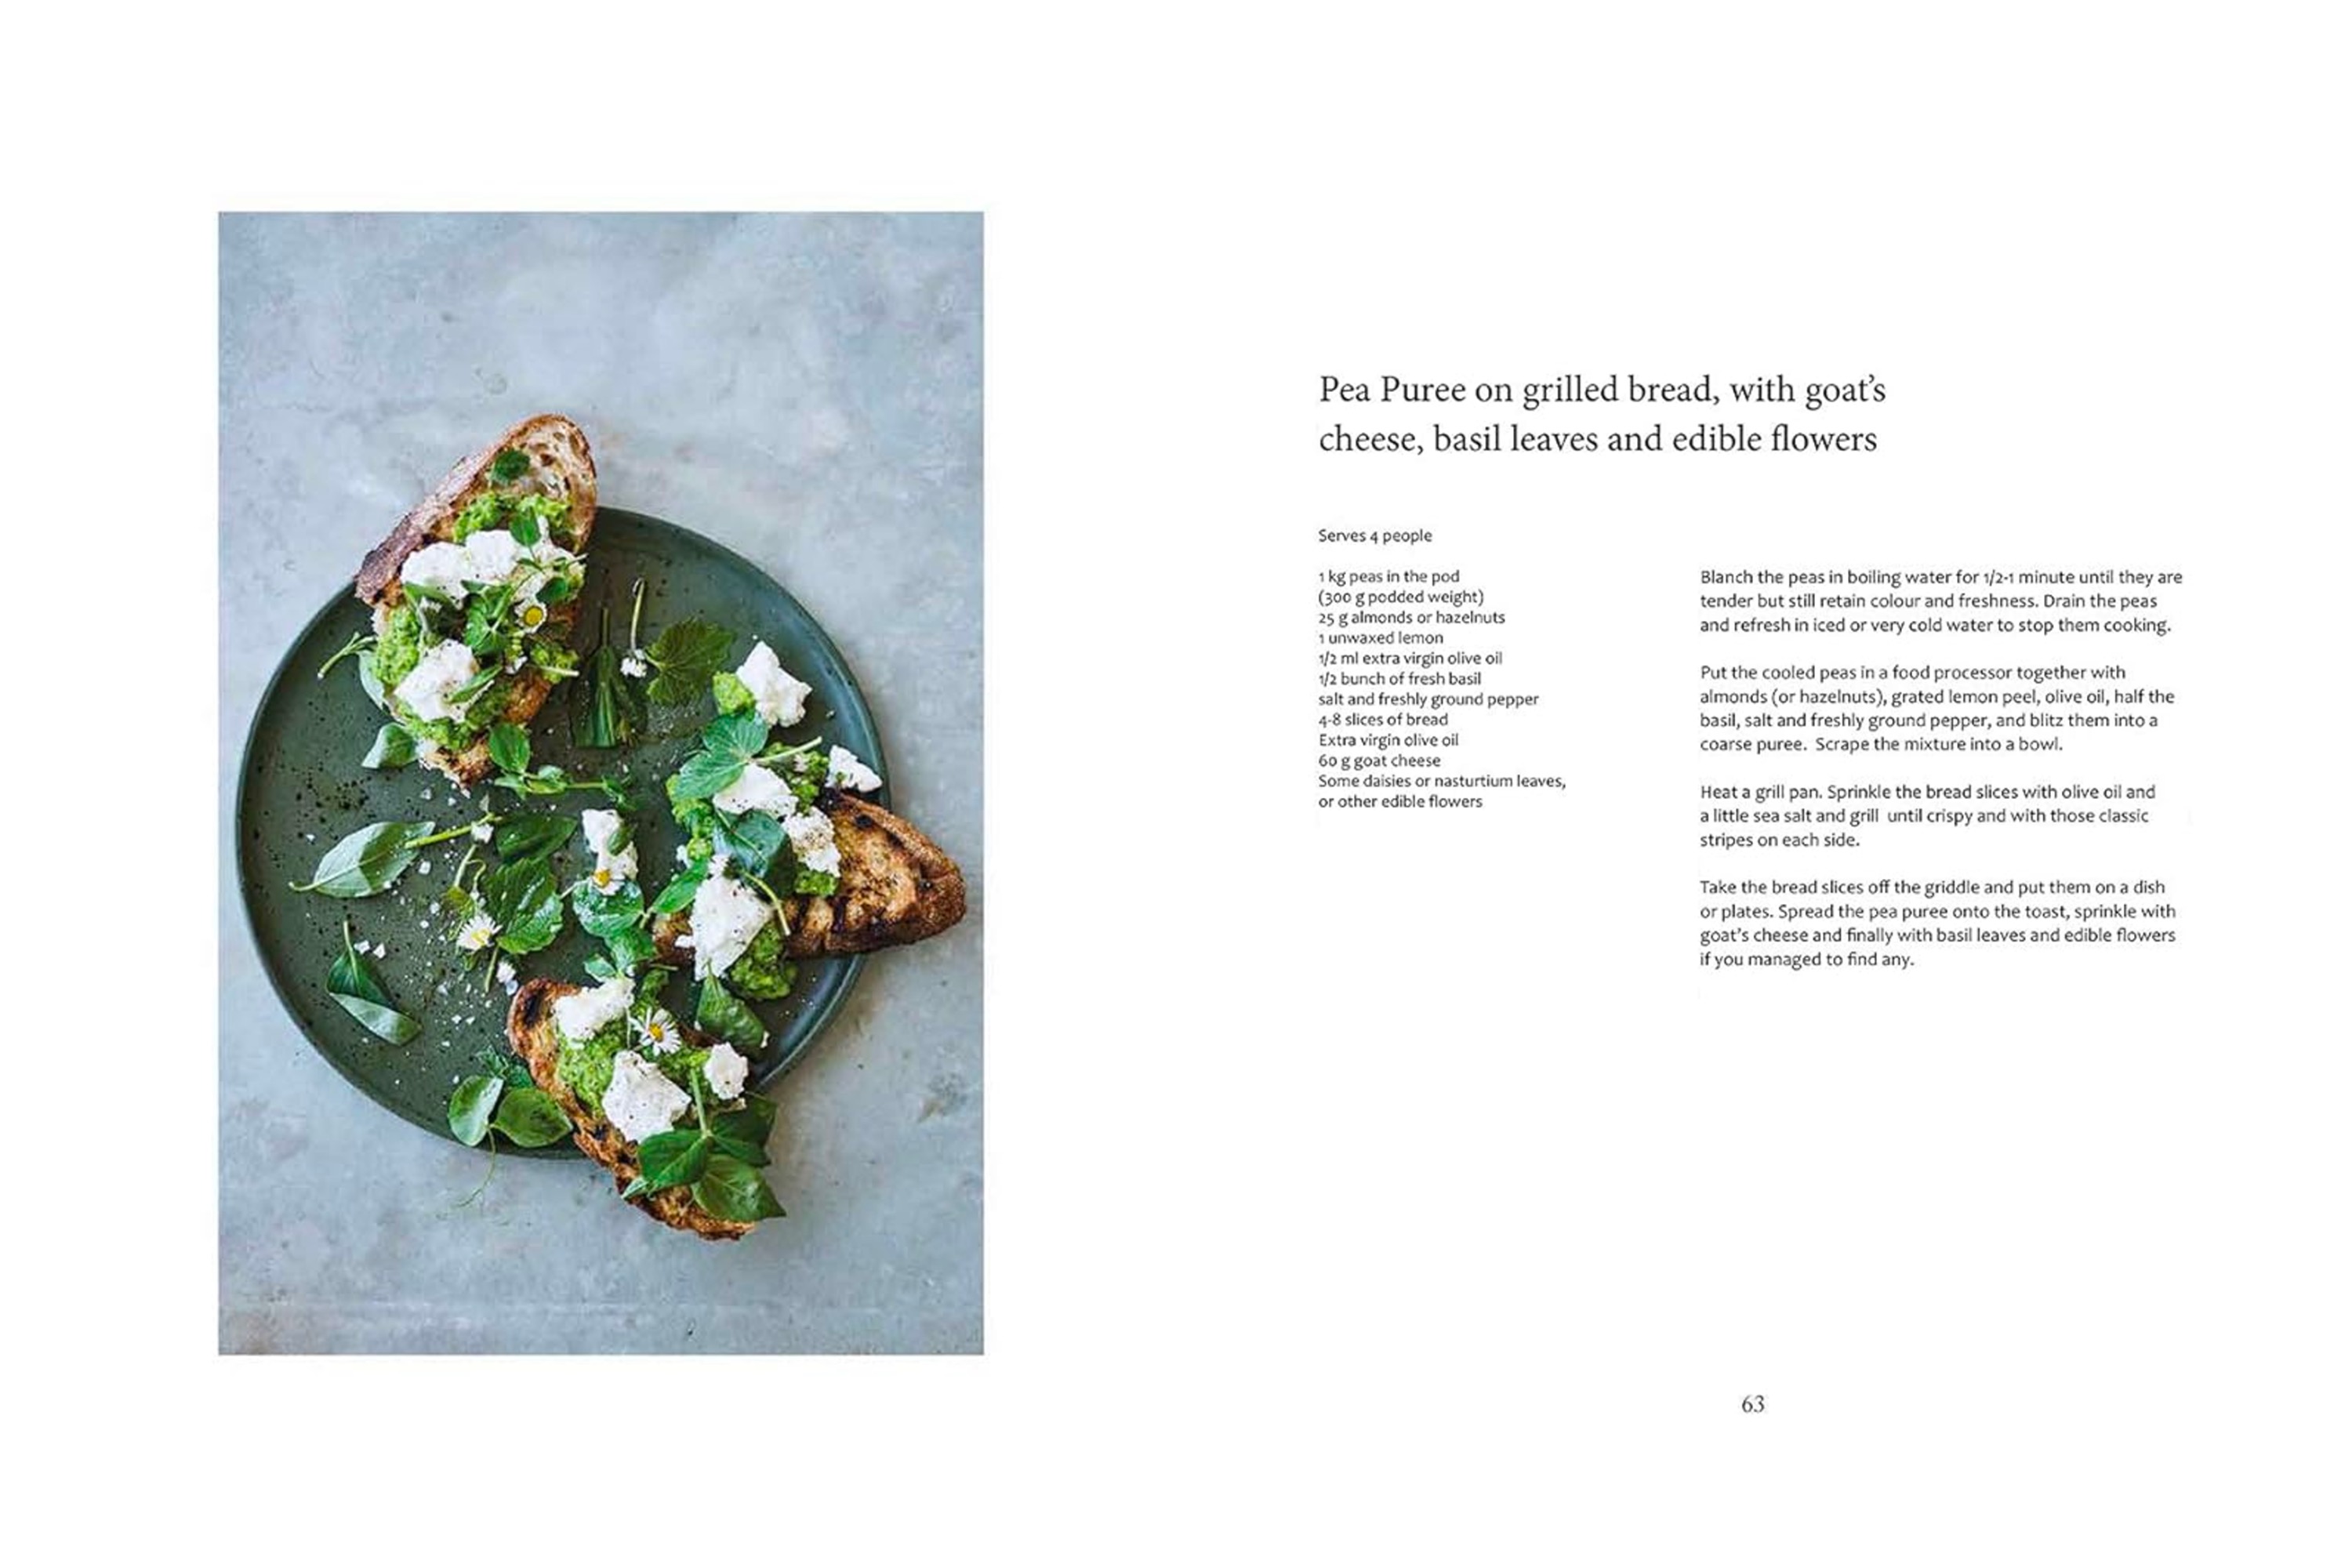 Evergreen: Vegan Recipes From A Nørdic Kitchen / Mikkel Karstad